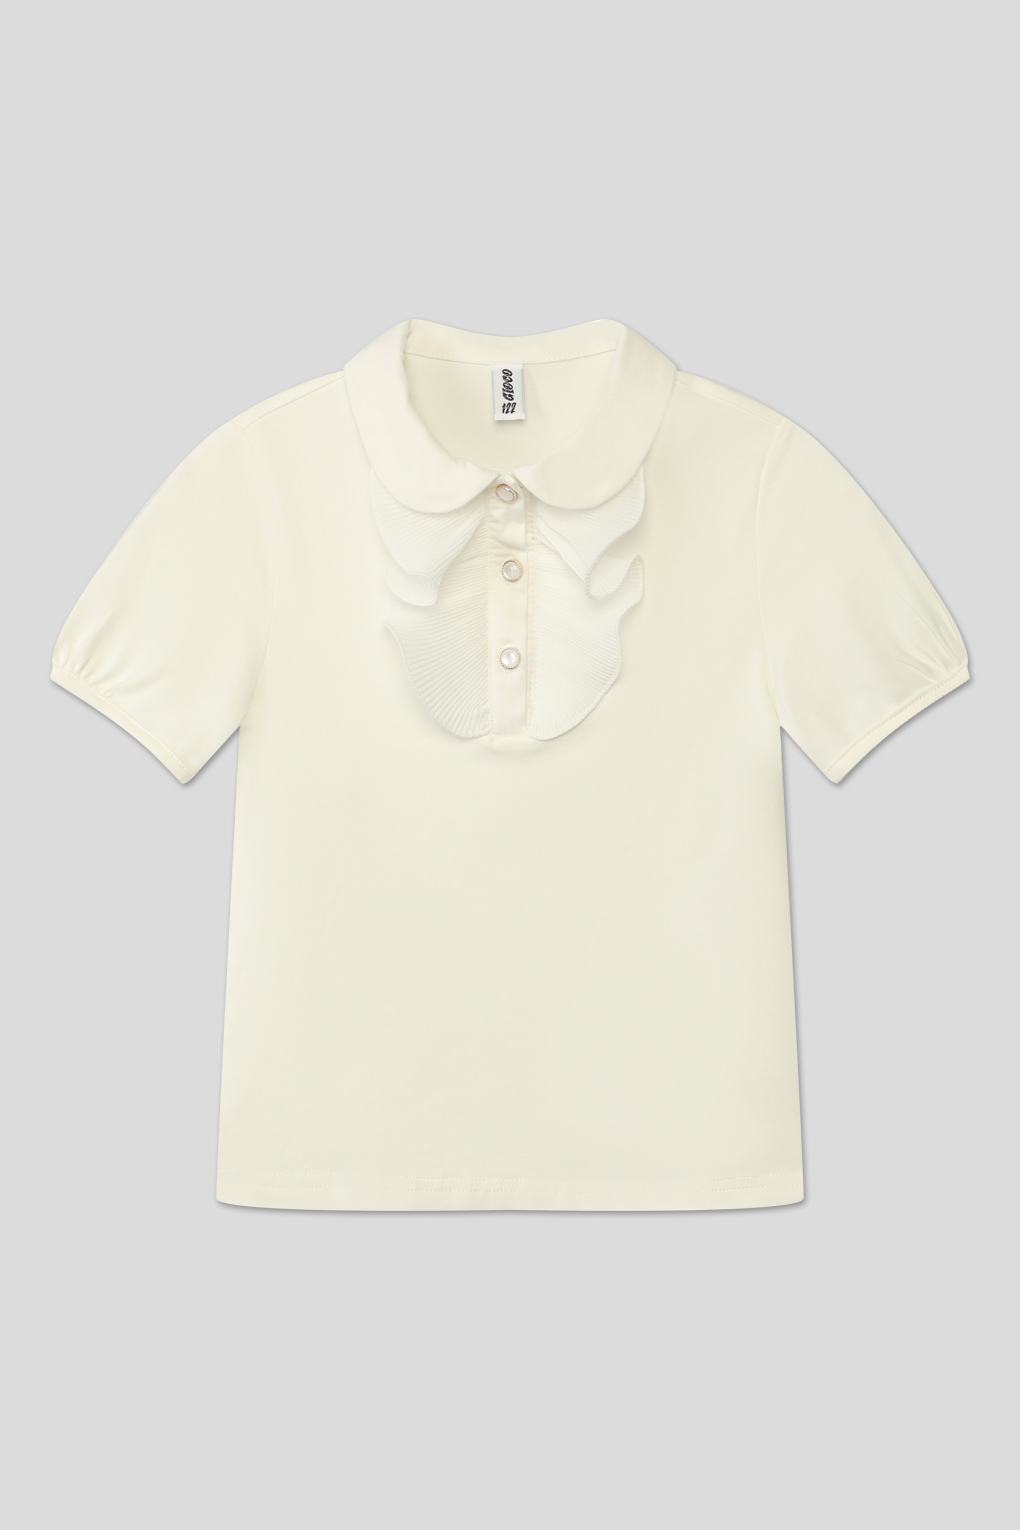 блуза трикотажная GIOCO G23063485-025 молочный для девочек, цвет Молочный р.122